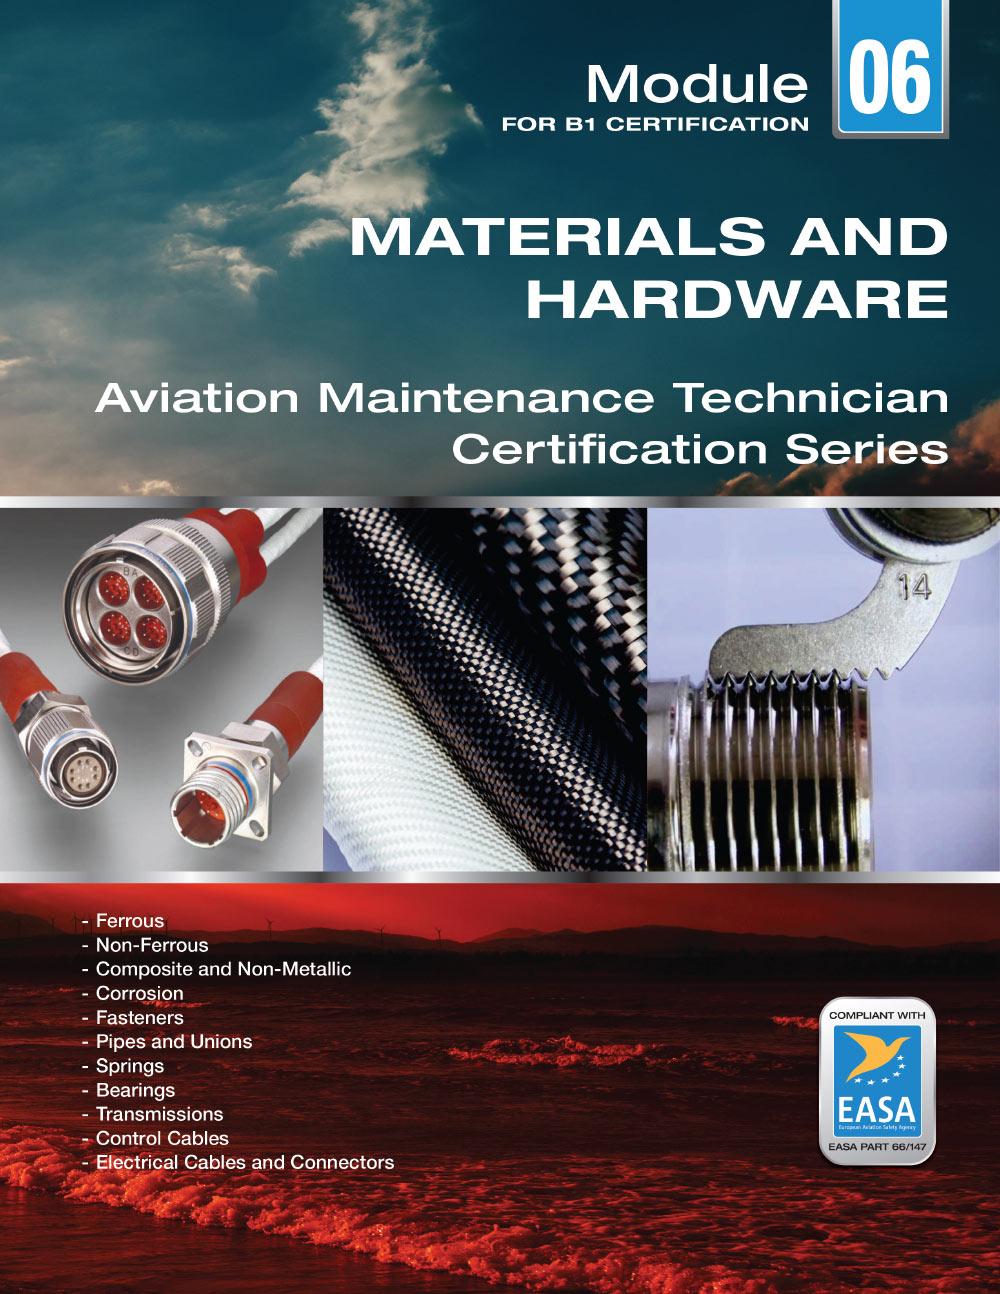 Aviation Legislation: Module 10 (B1/B2) - eBook